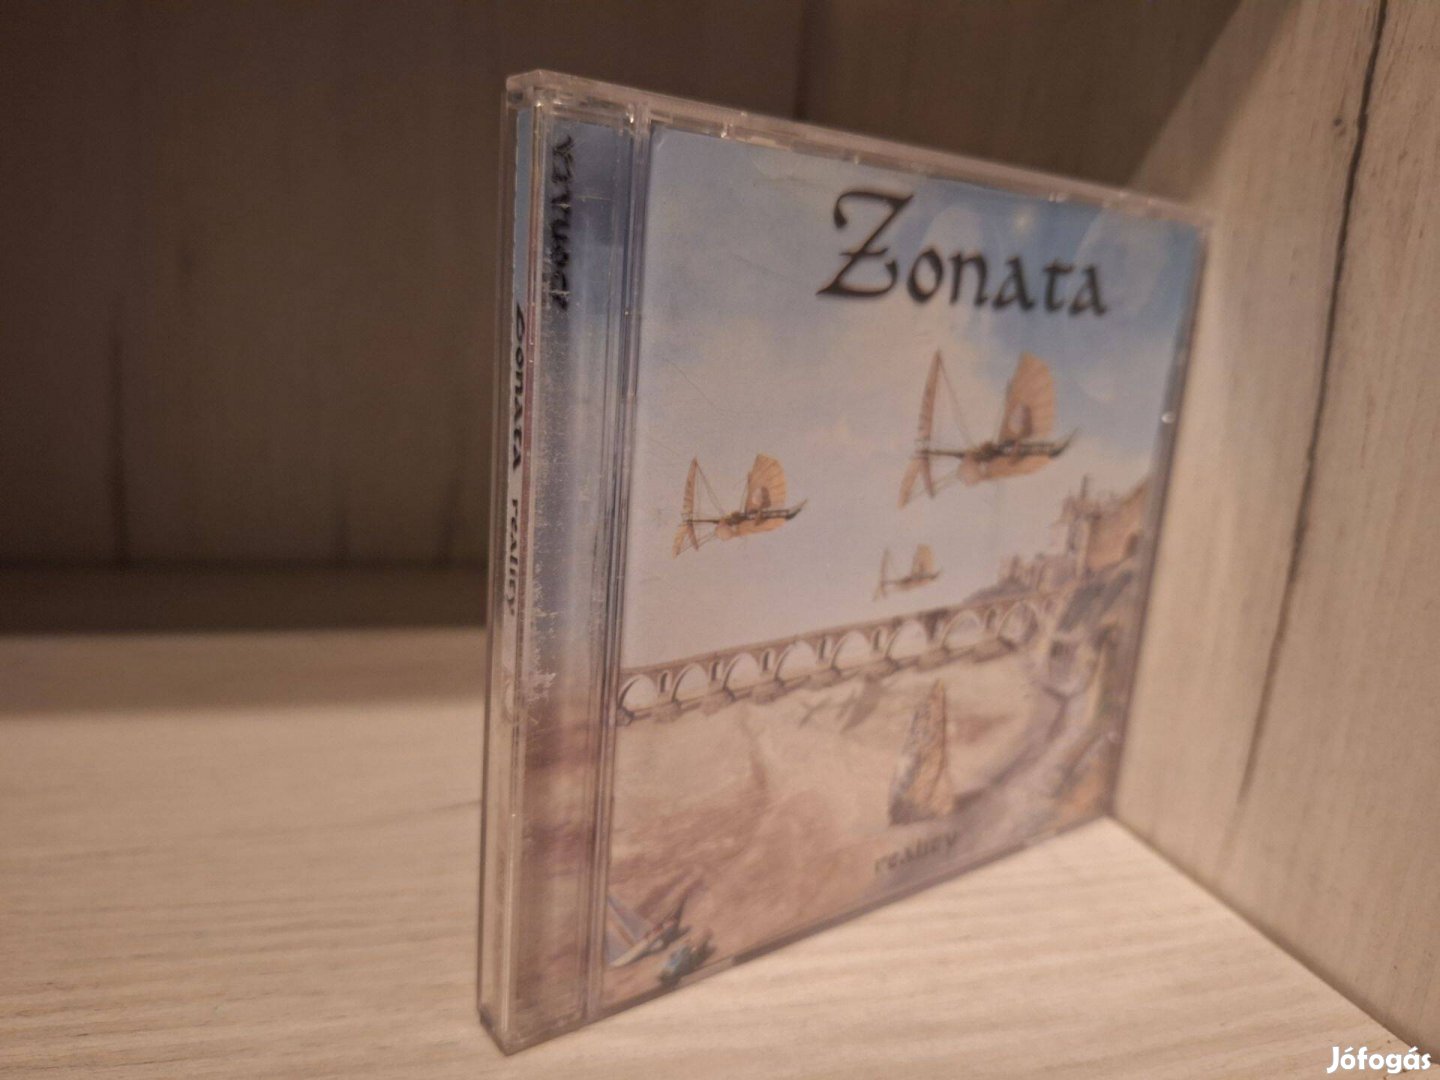 Zonata - Reality CD